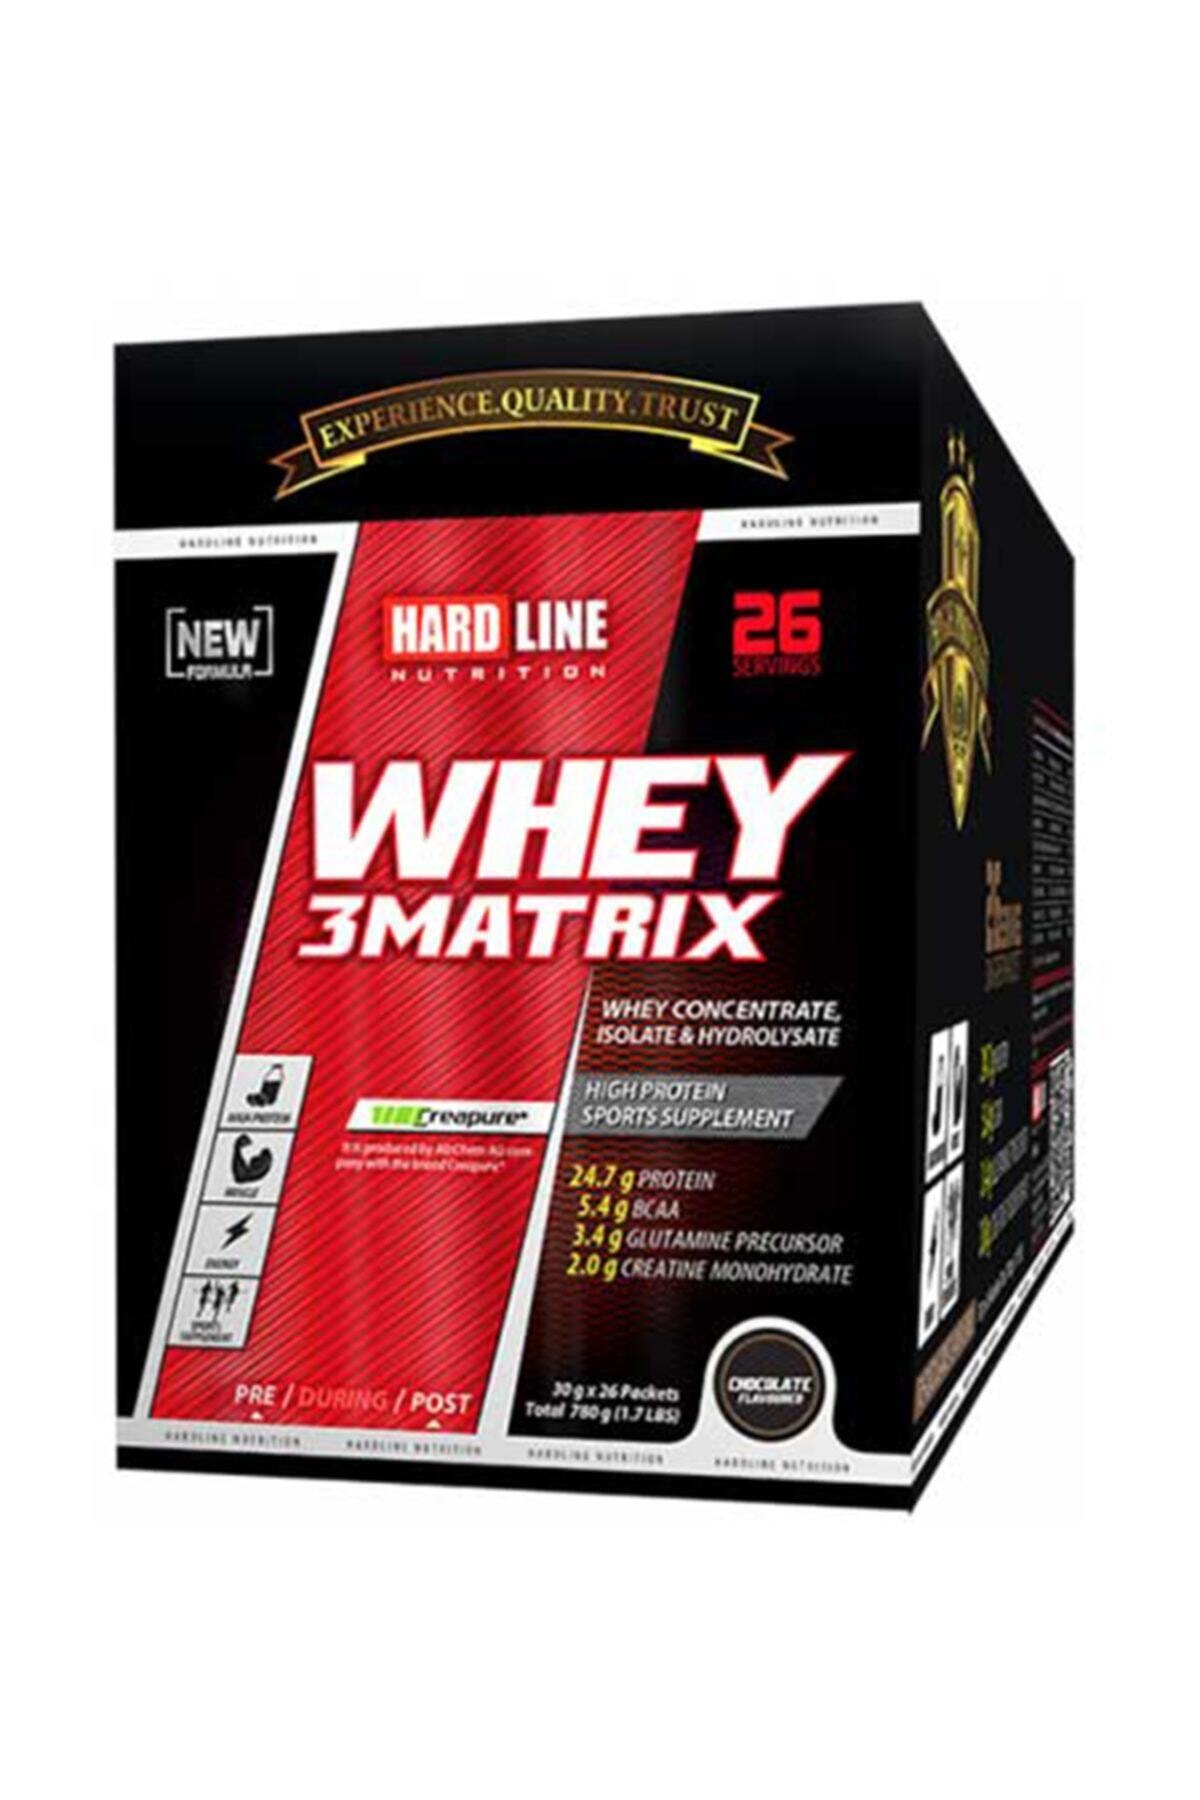 Hardline Whey 3 Matrix Protein Tozu 30 Grlık 78 Paket